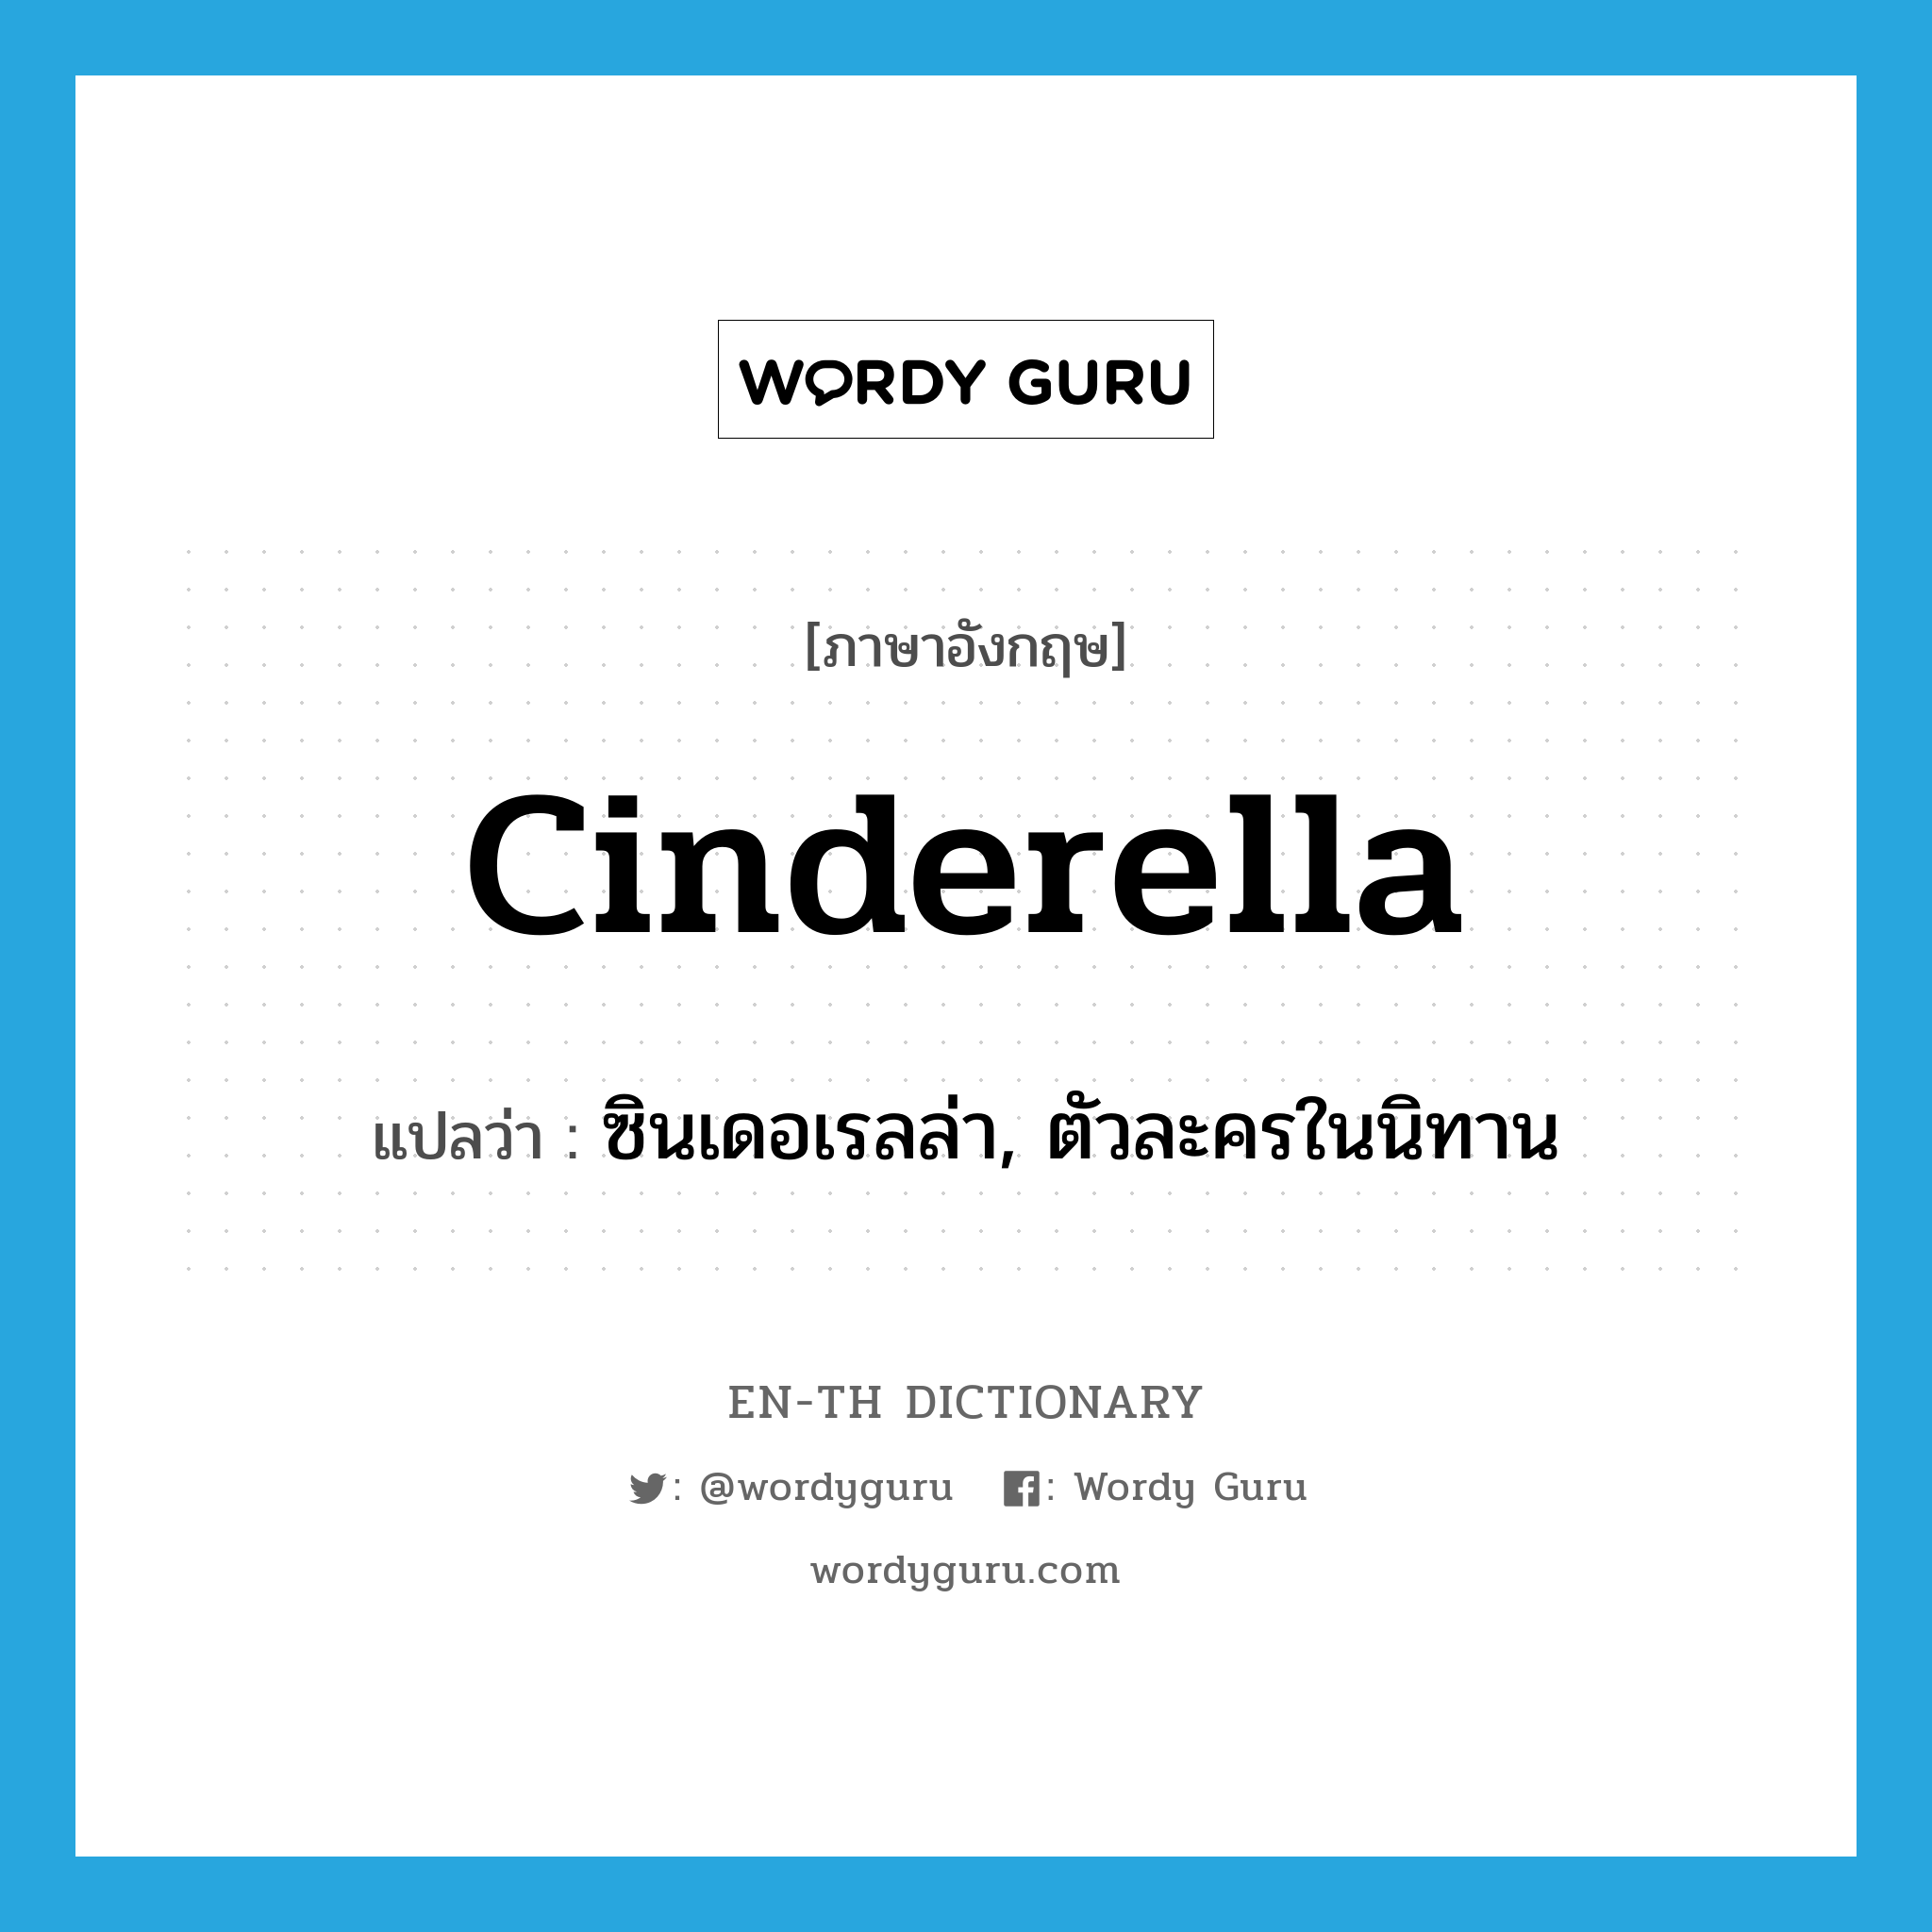 ซินเดอเรลล่า, ตัวละครในนิทาน ภาษาอังกฤษ?, คำศัพท์ภาษาอังกฤษ ซินเดอเรลล่า, ตัวละครในนิทาน แปลว่า Cinderella ประเภท N หมวด N